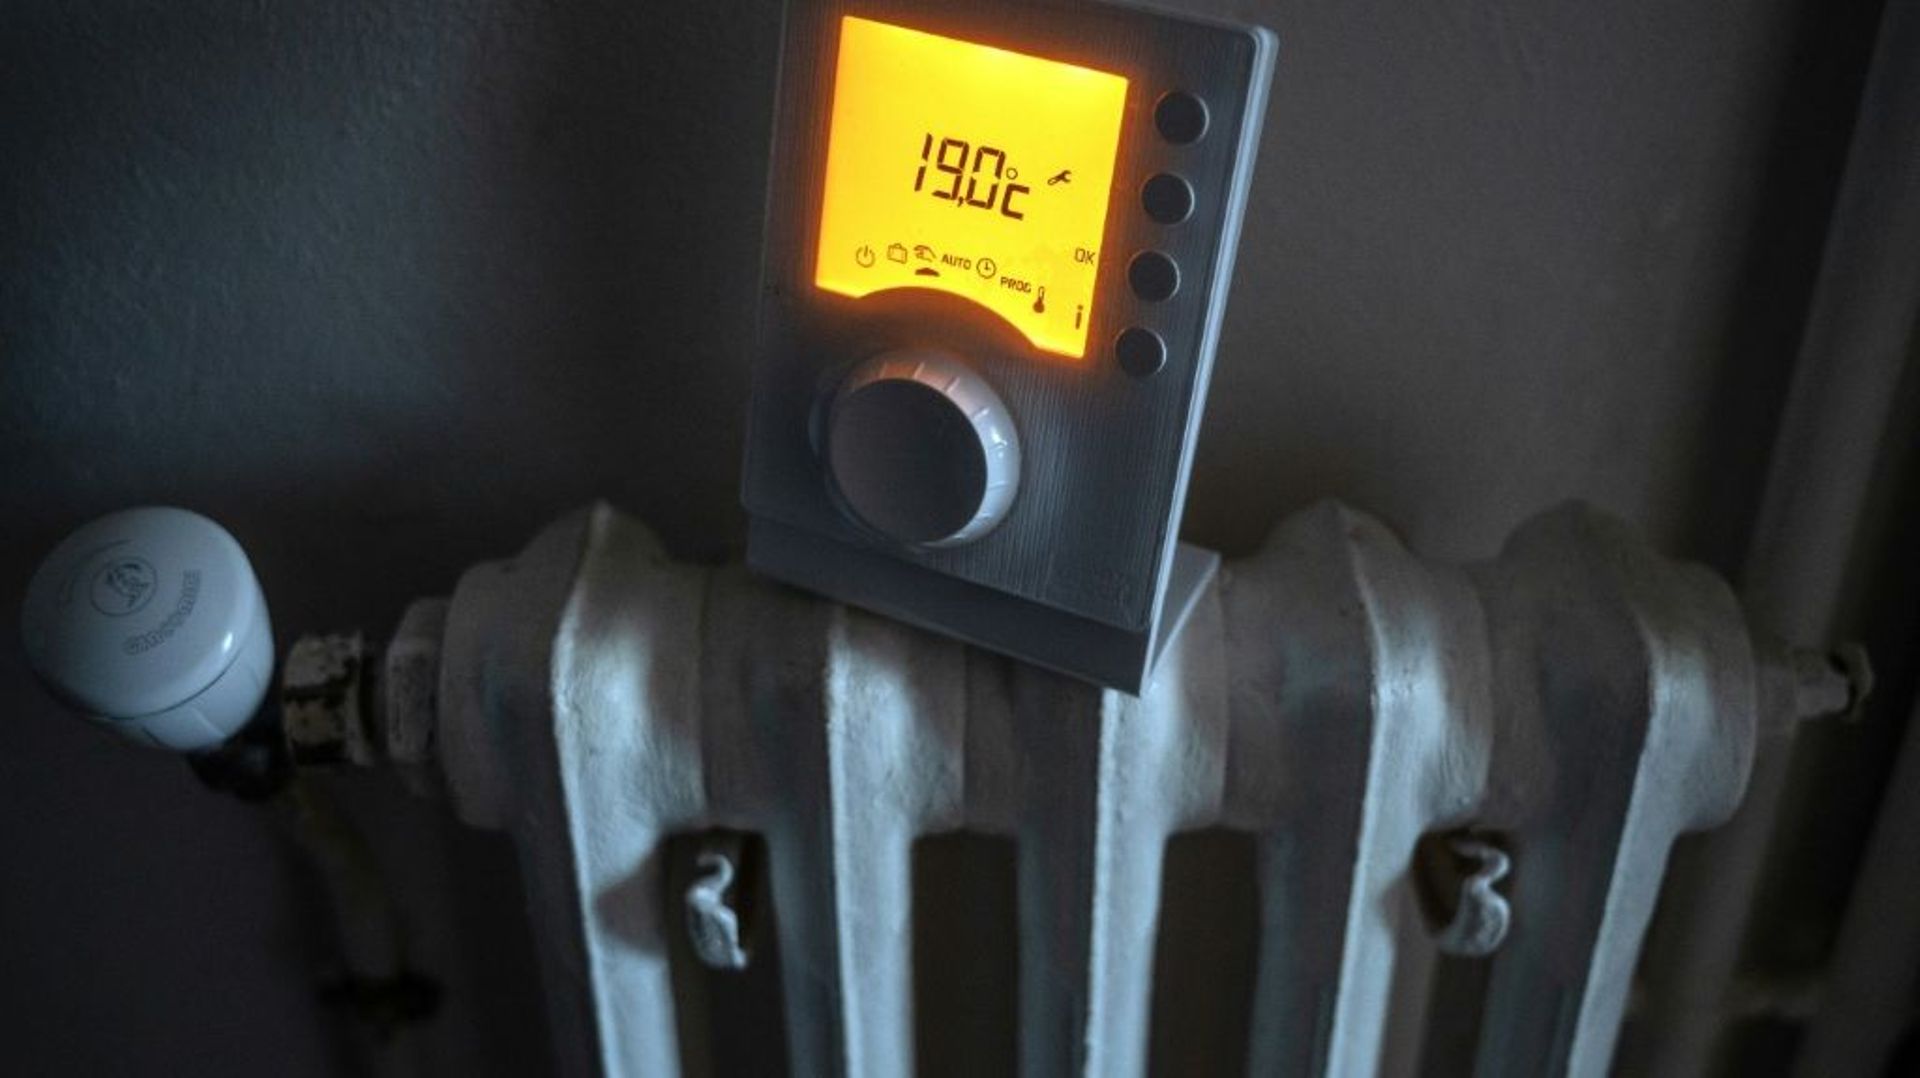 Le thermostat d’un radiateur indique une température de 19 °C, le 18 novembre 2022 à Toulouse